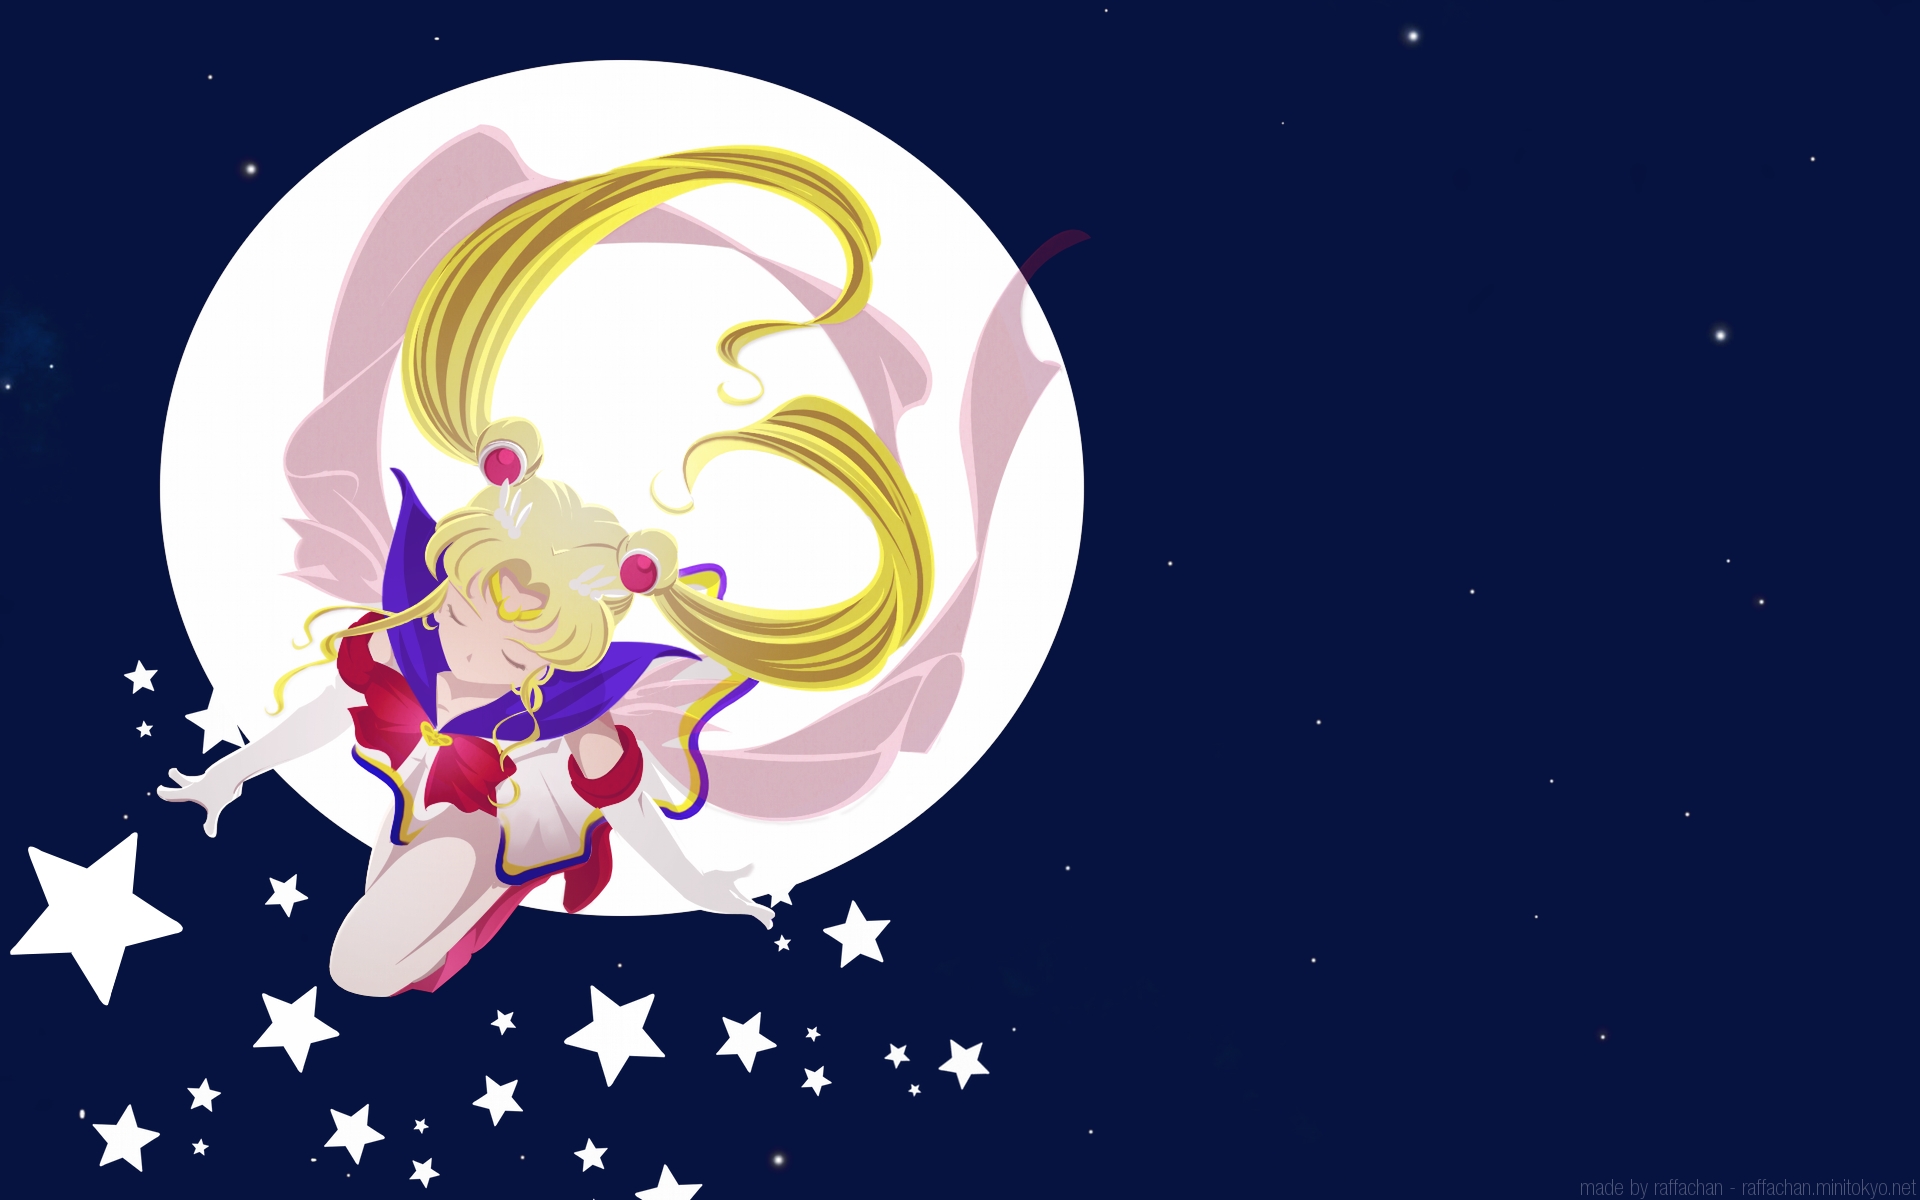 Hình nền Sailor Moon miễn phí? Chúng tôi có đó! Tận hưởng những hình nền đẹp mắt và độc đáo với bộ sưu tập của chúng tôi, và không cần trả bất kỳ chi phí nào. Với nhiều thiết kế tuyệt đẹp và đầy sức sống, hãy tải xuống ngay để trang trí cho màn hình của bạn. 